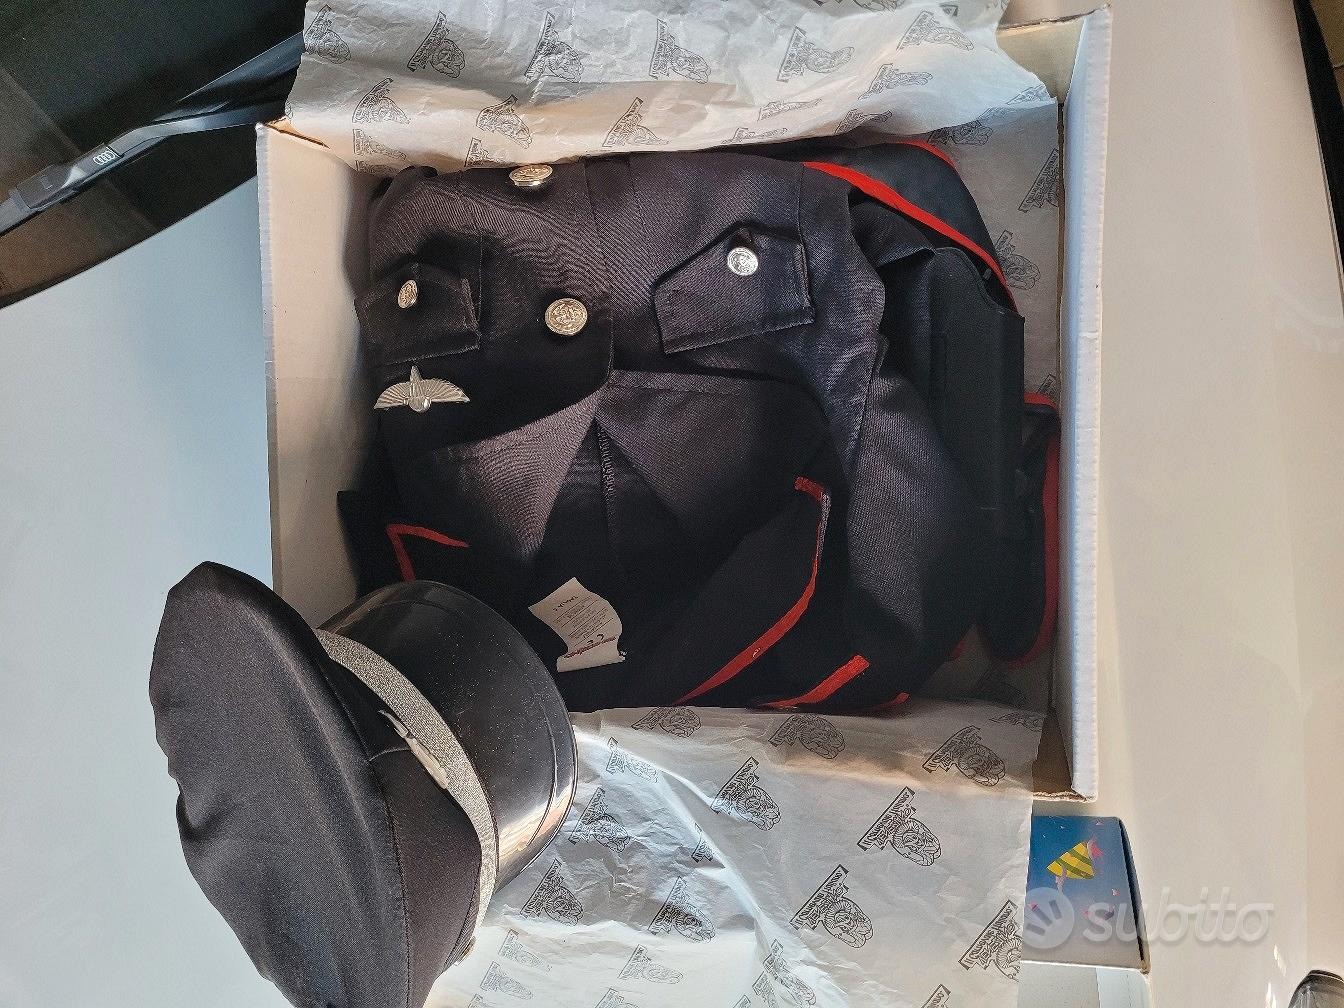 Vestito da Carabiniere - Tutto per i bambini In vendita a Napoli